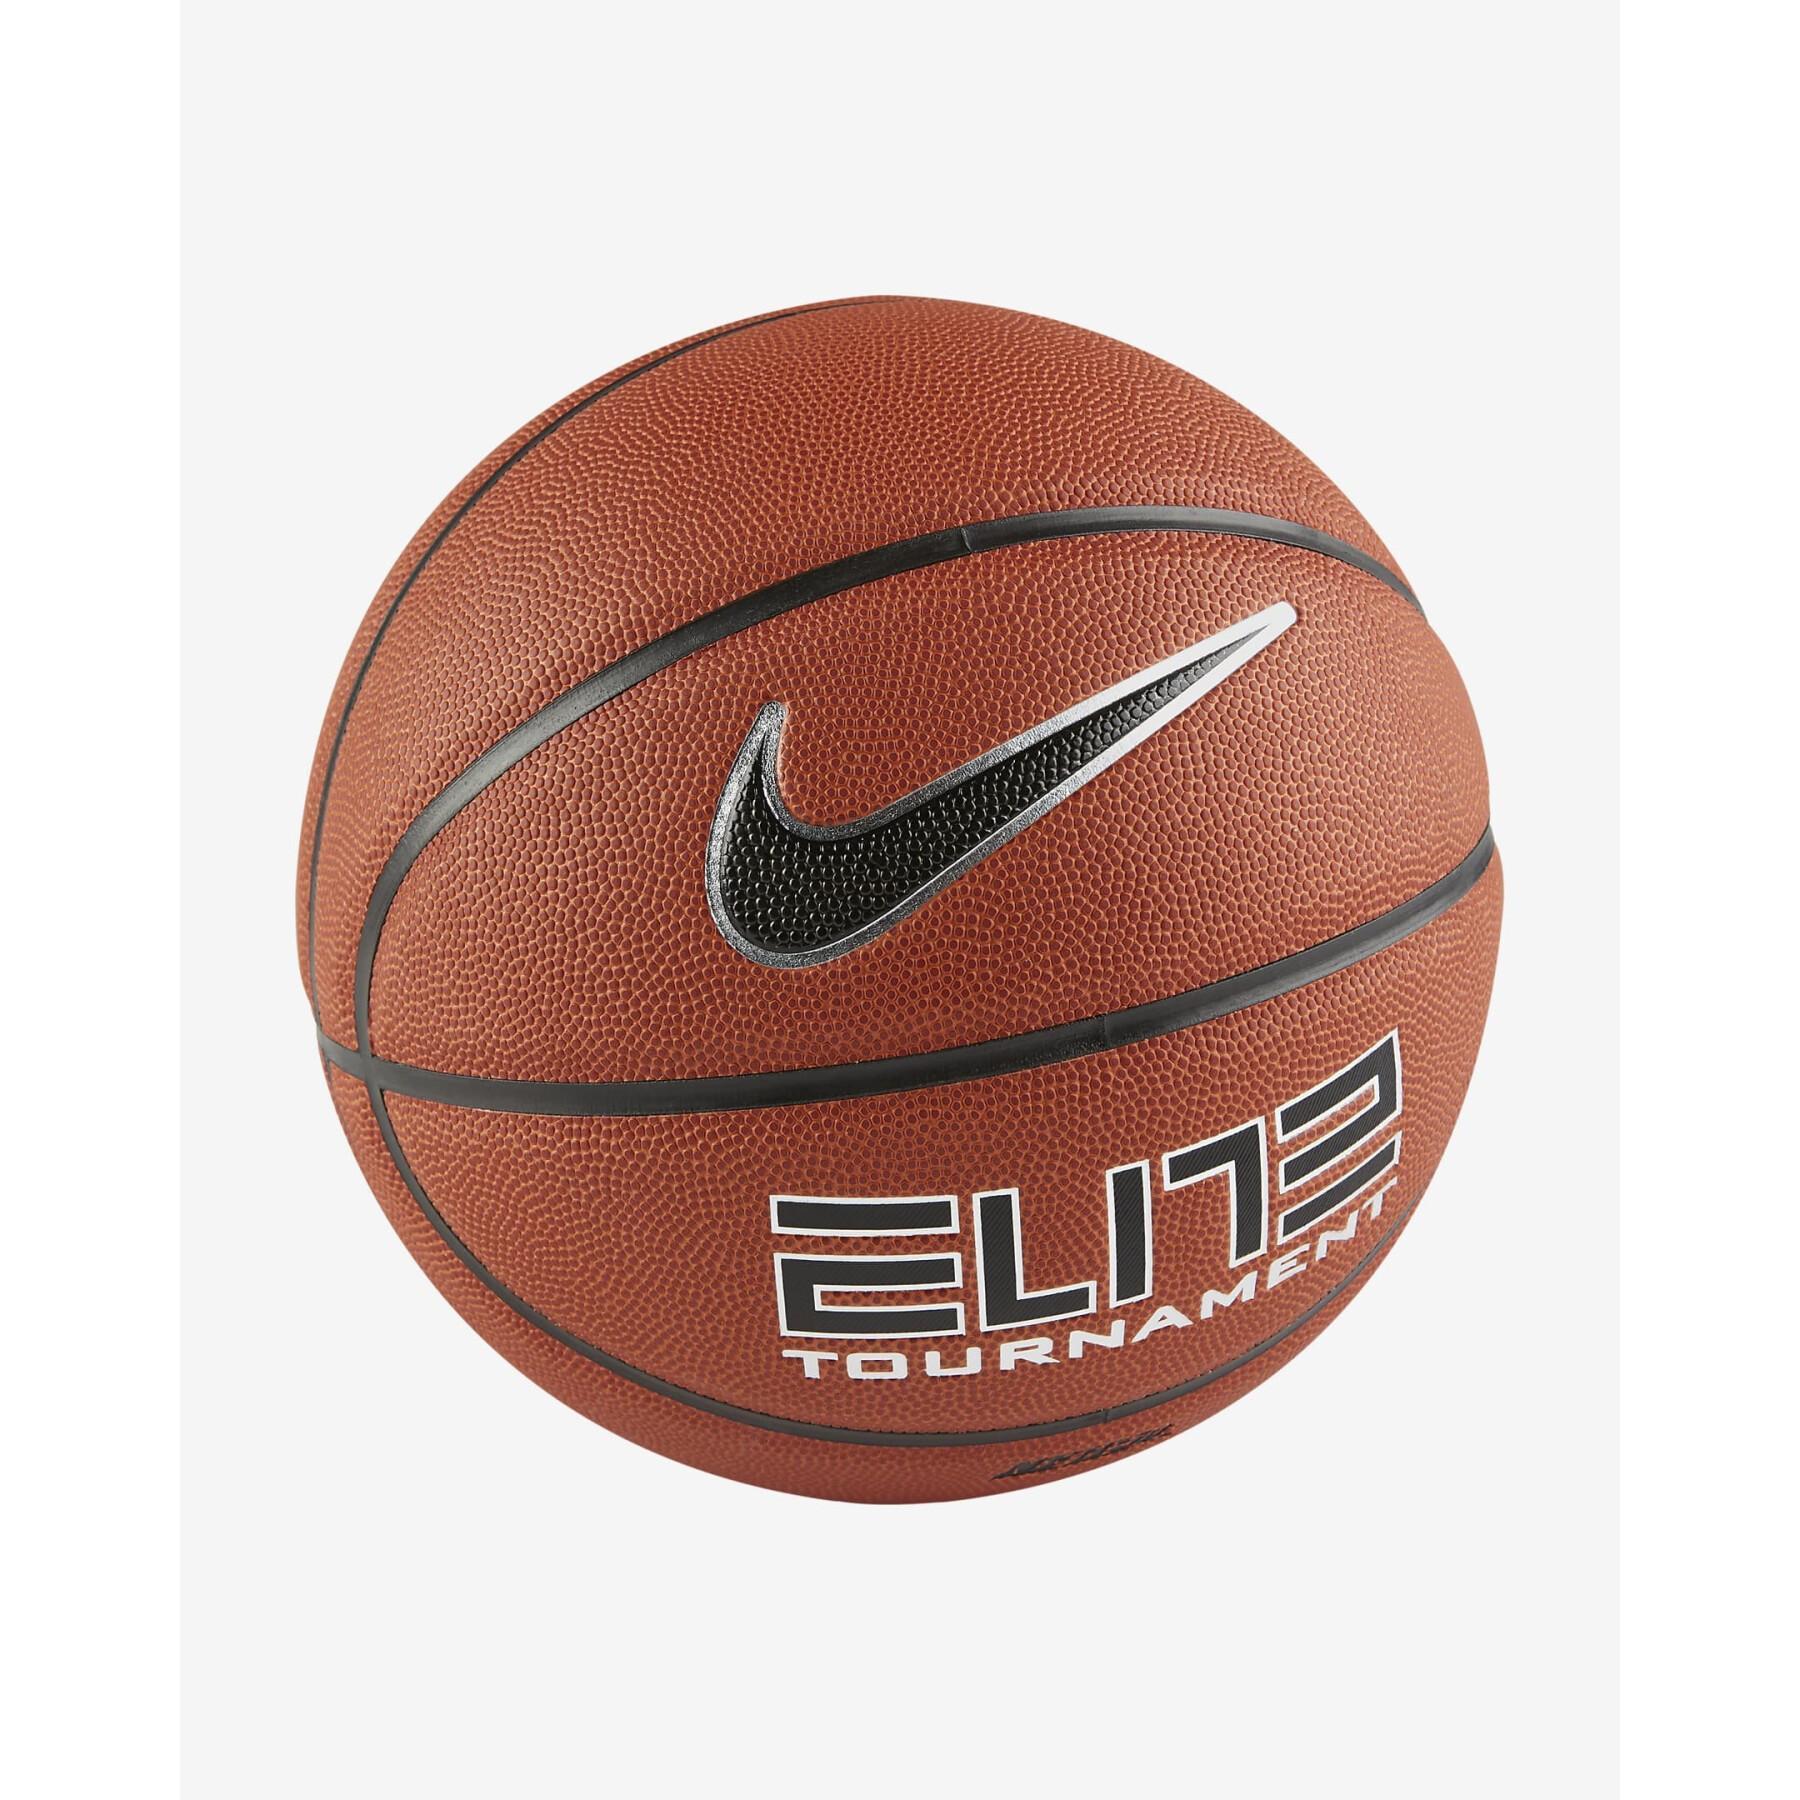 Piłka do koszykówki Nike elite tournament 8p